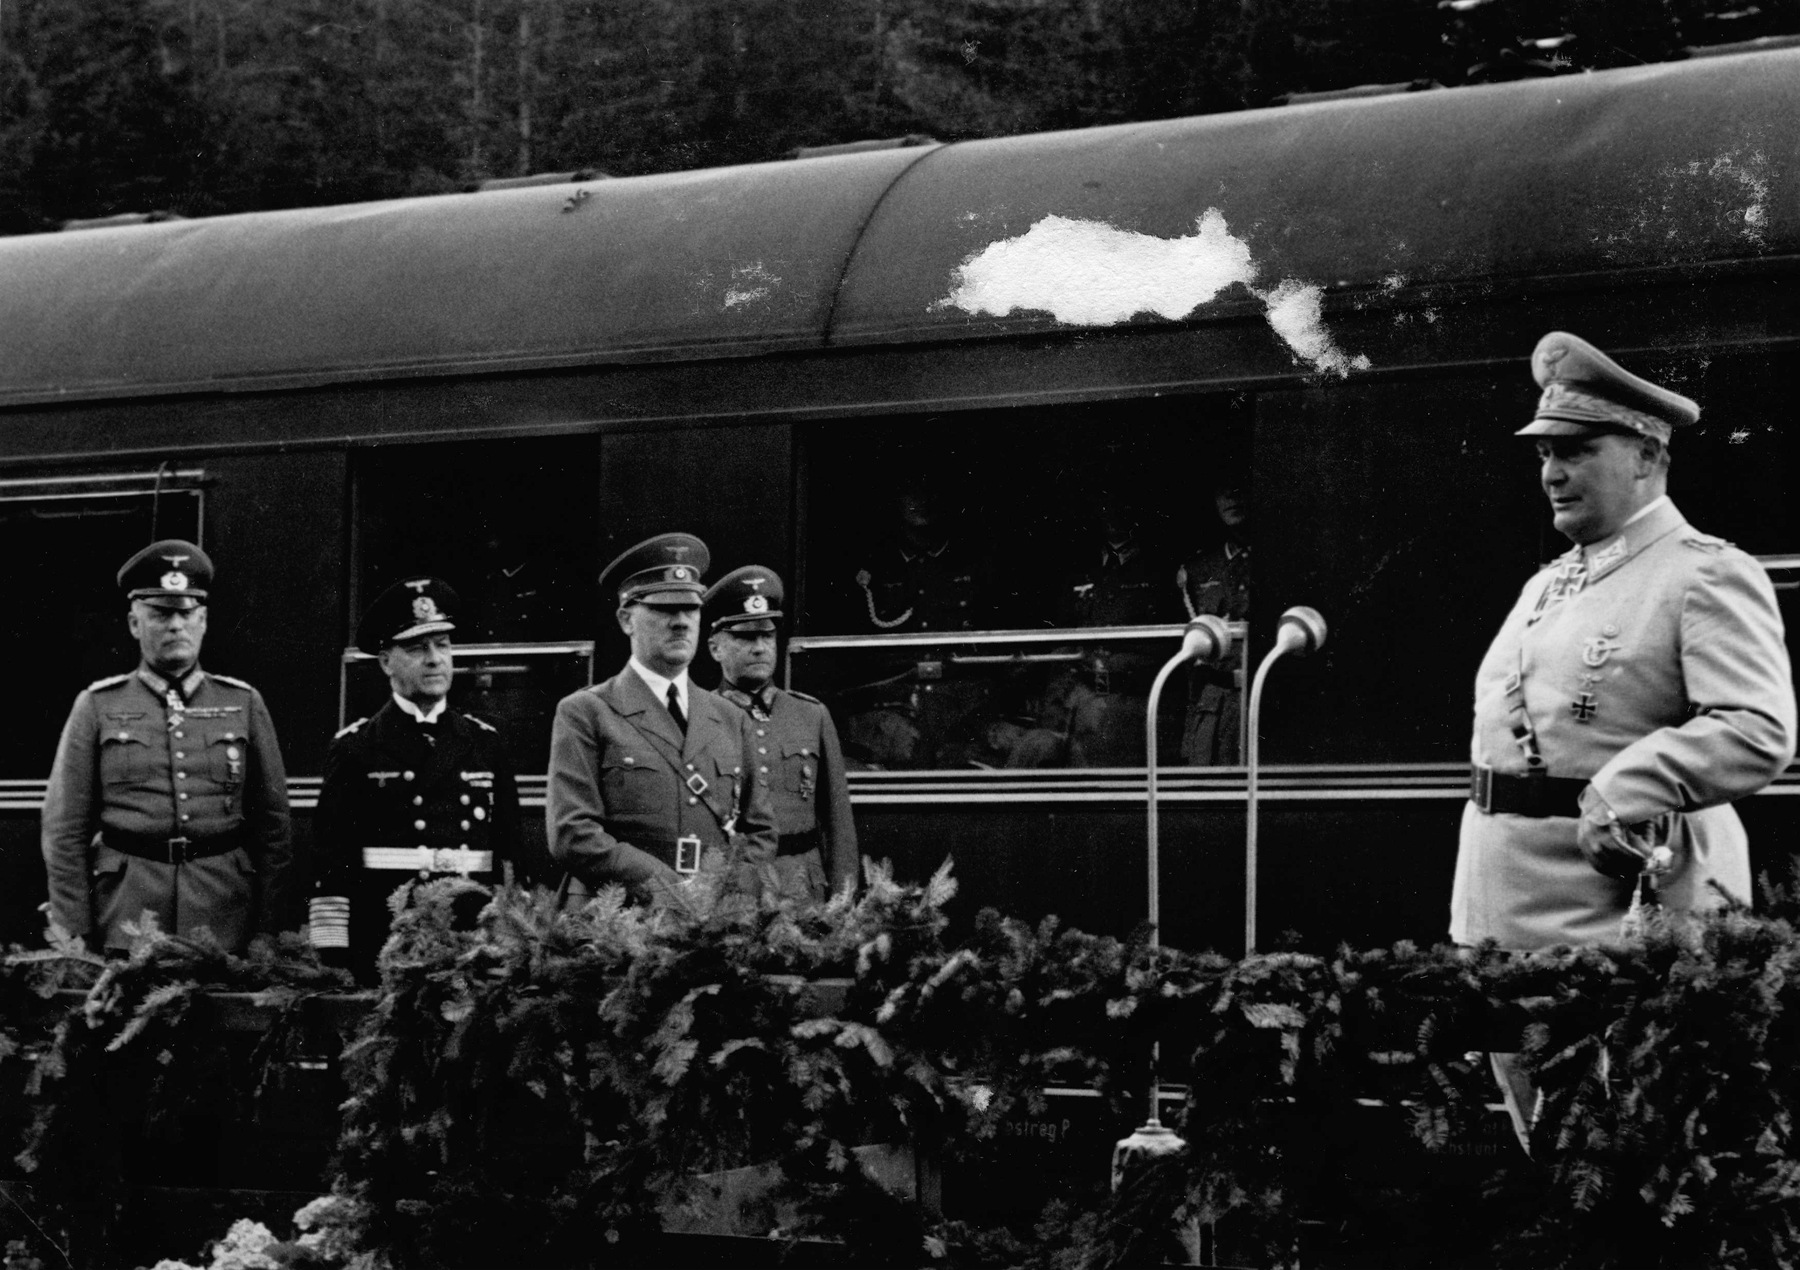 Hermann Göring's Train Still Exists!